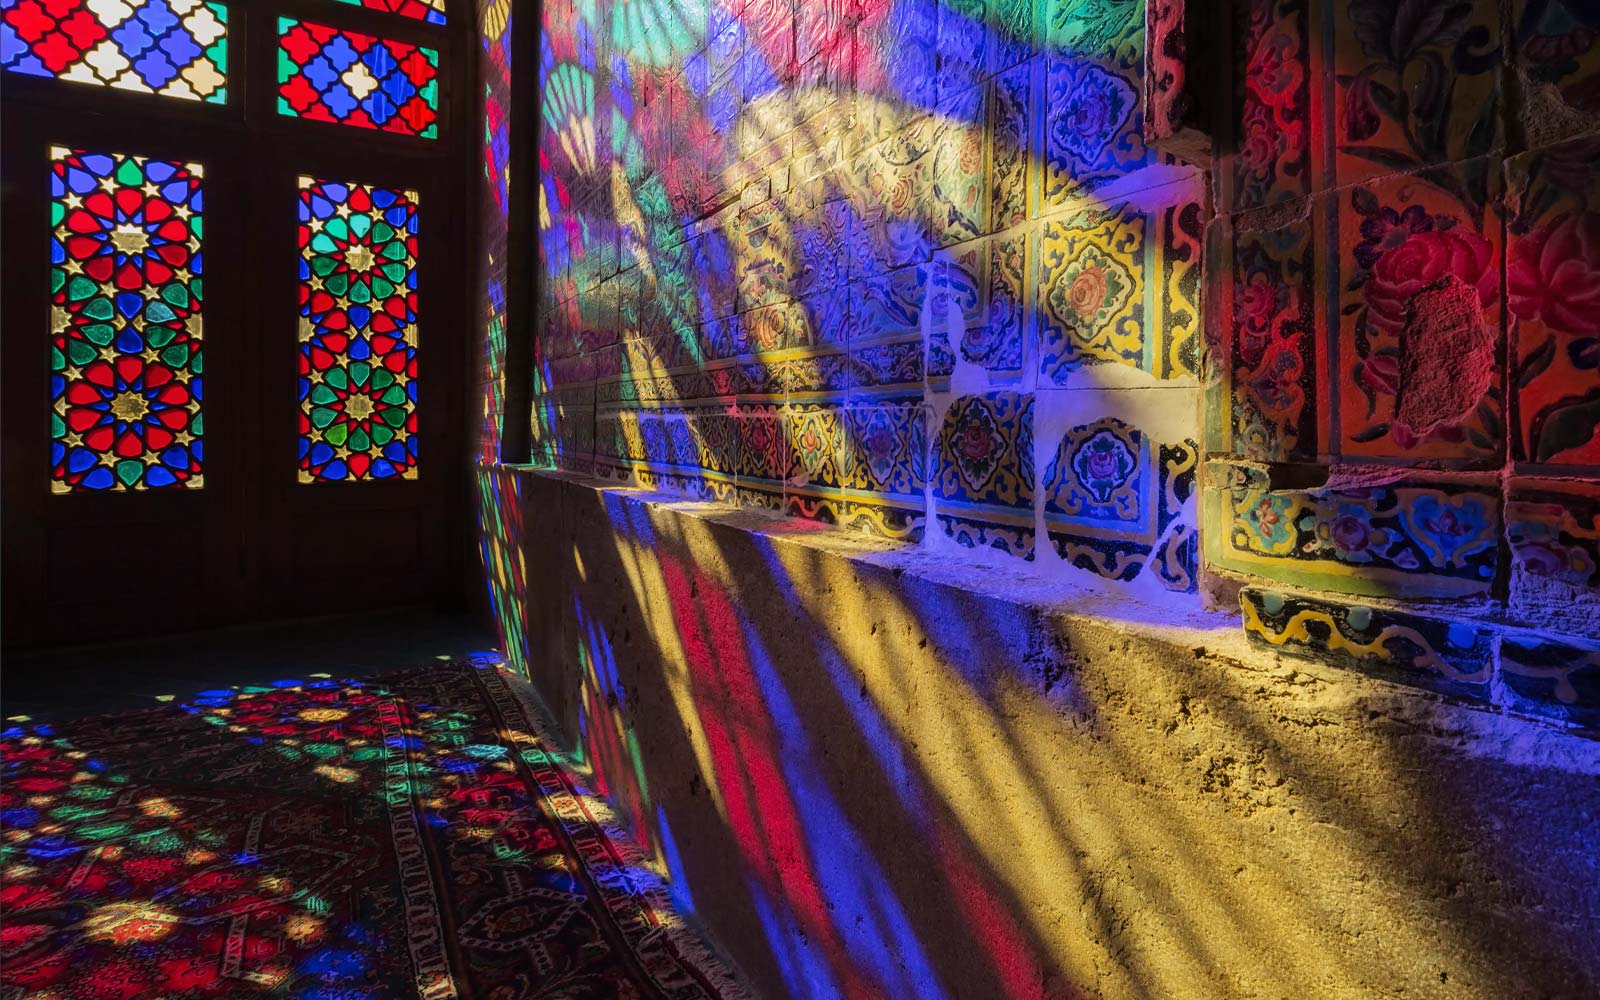 Pogled na svetlobo, ki sije skozi vitraže in projicira barve na steno (predvajaj video).